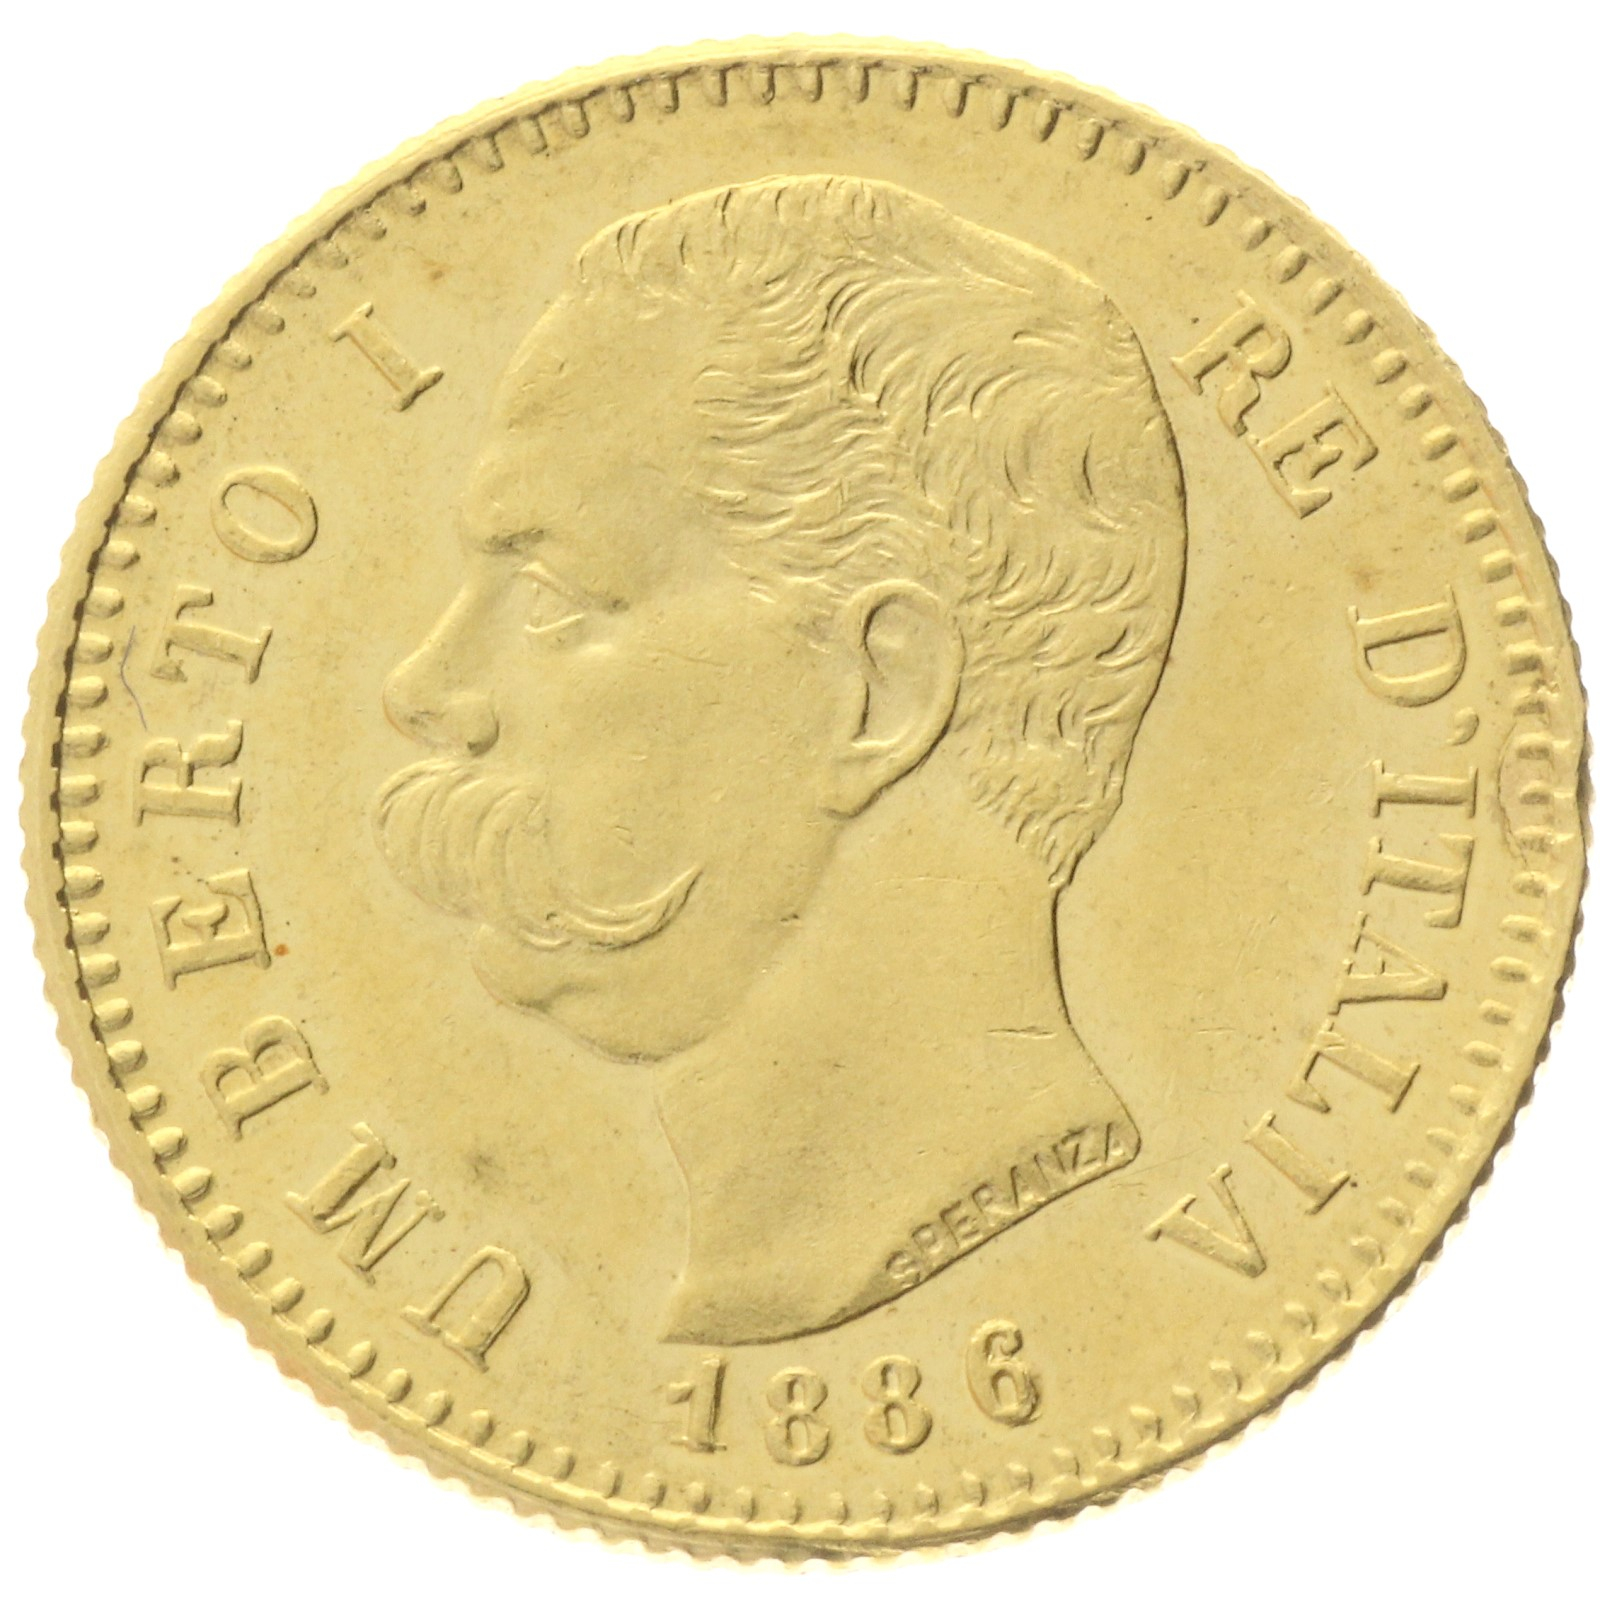 Italy - 20 Lire - 1886 - Umberto I 